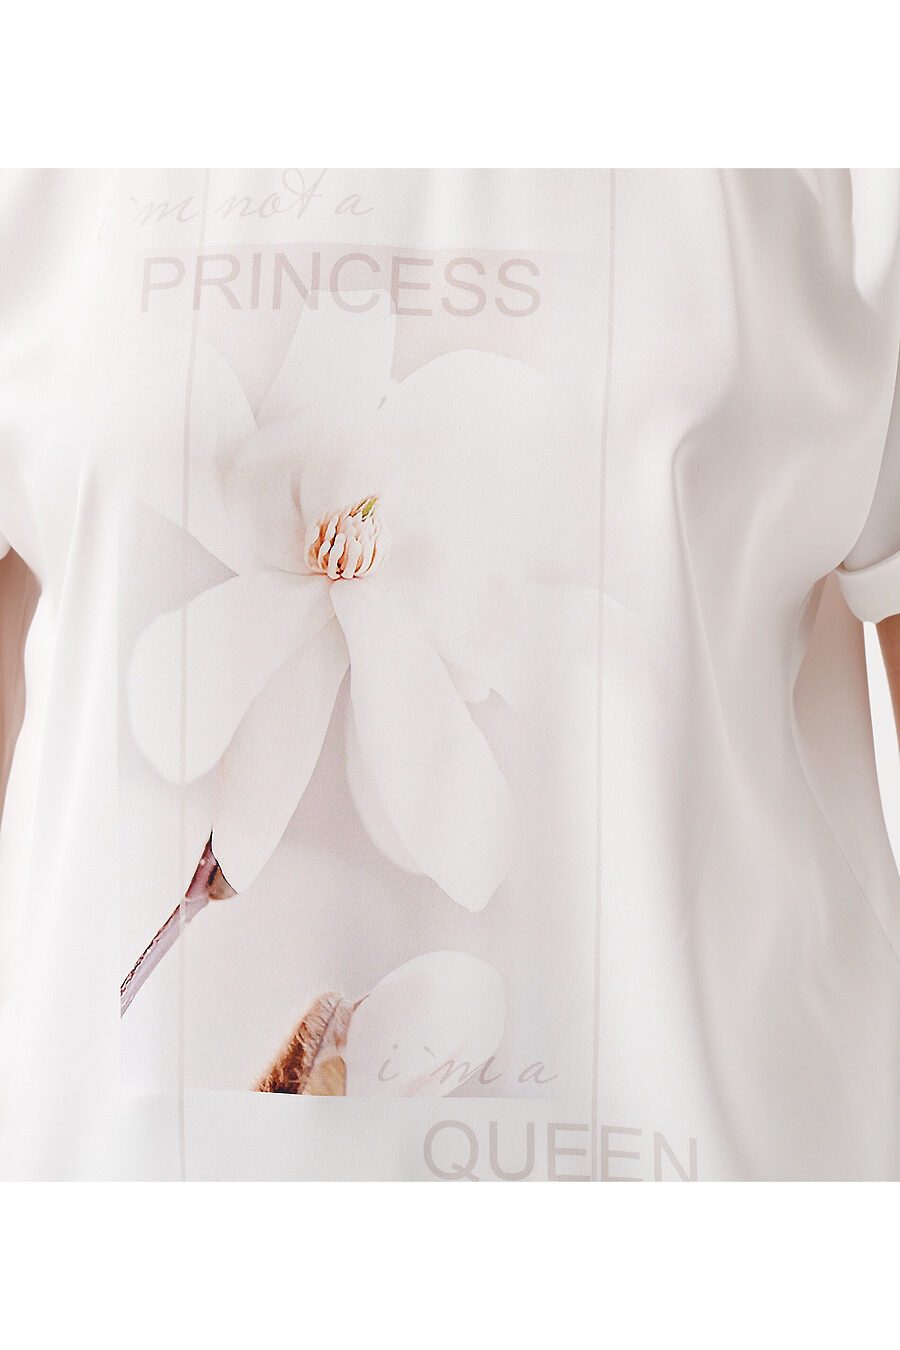 Блуза для женщин PANDA 776137 купить оптом от производителя. Совместная покупка женской одежды в OptMoyo